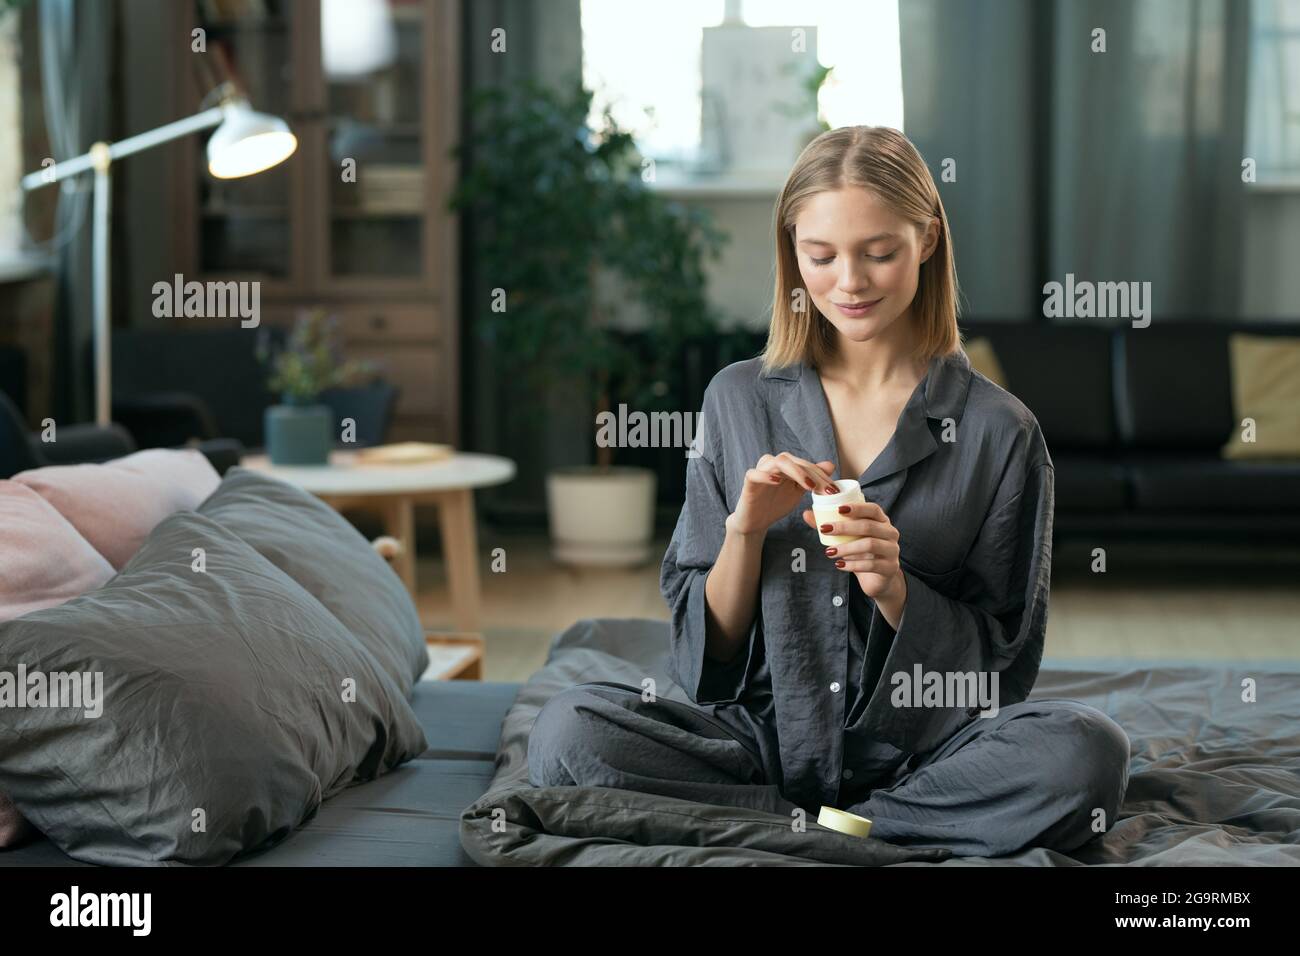 Junge blonde hübsche weibliche in grauen Pyjamas Anwendung natürliche Handarbeit Kosmetisches Produkt auf ihrem Gesicht, während sie auf dem Bett innen sitzt Am Morgen Stockfoto